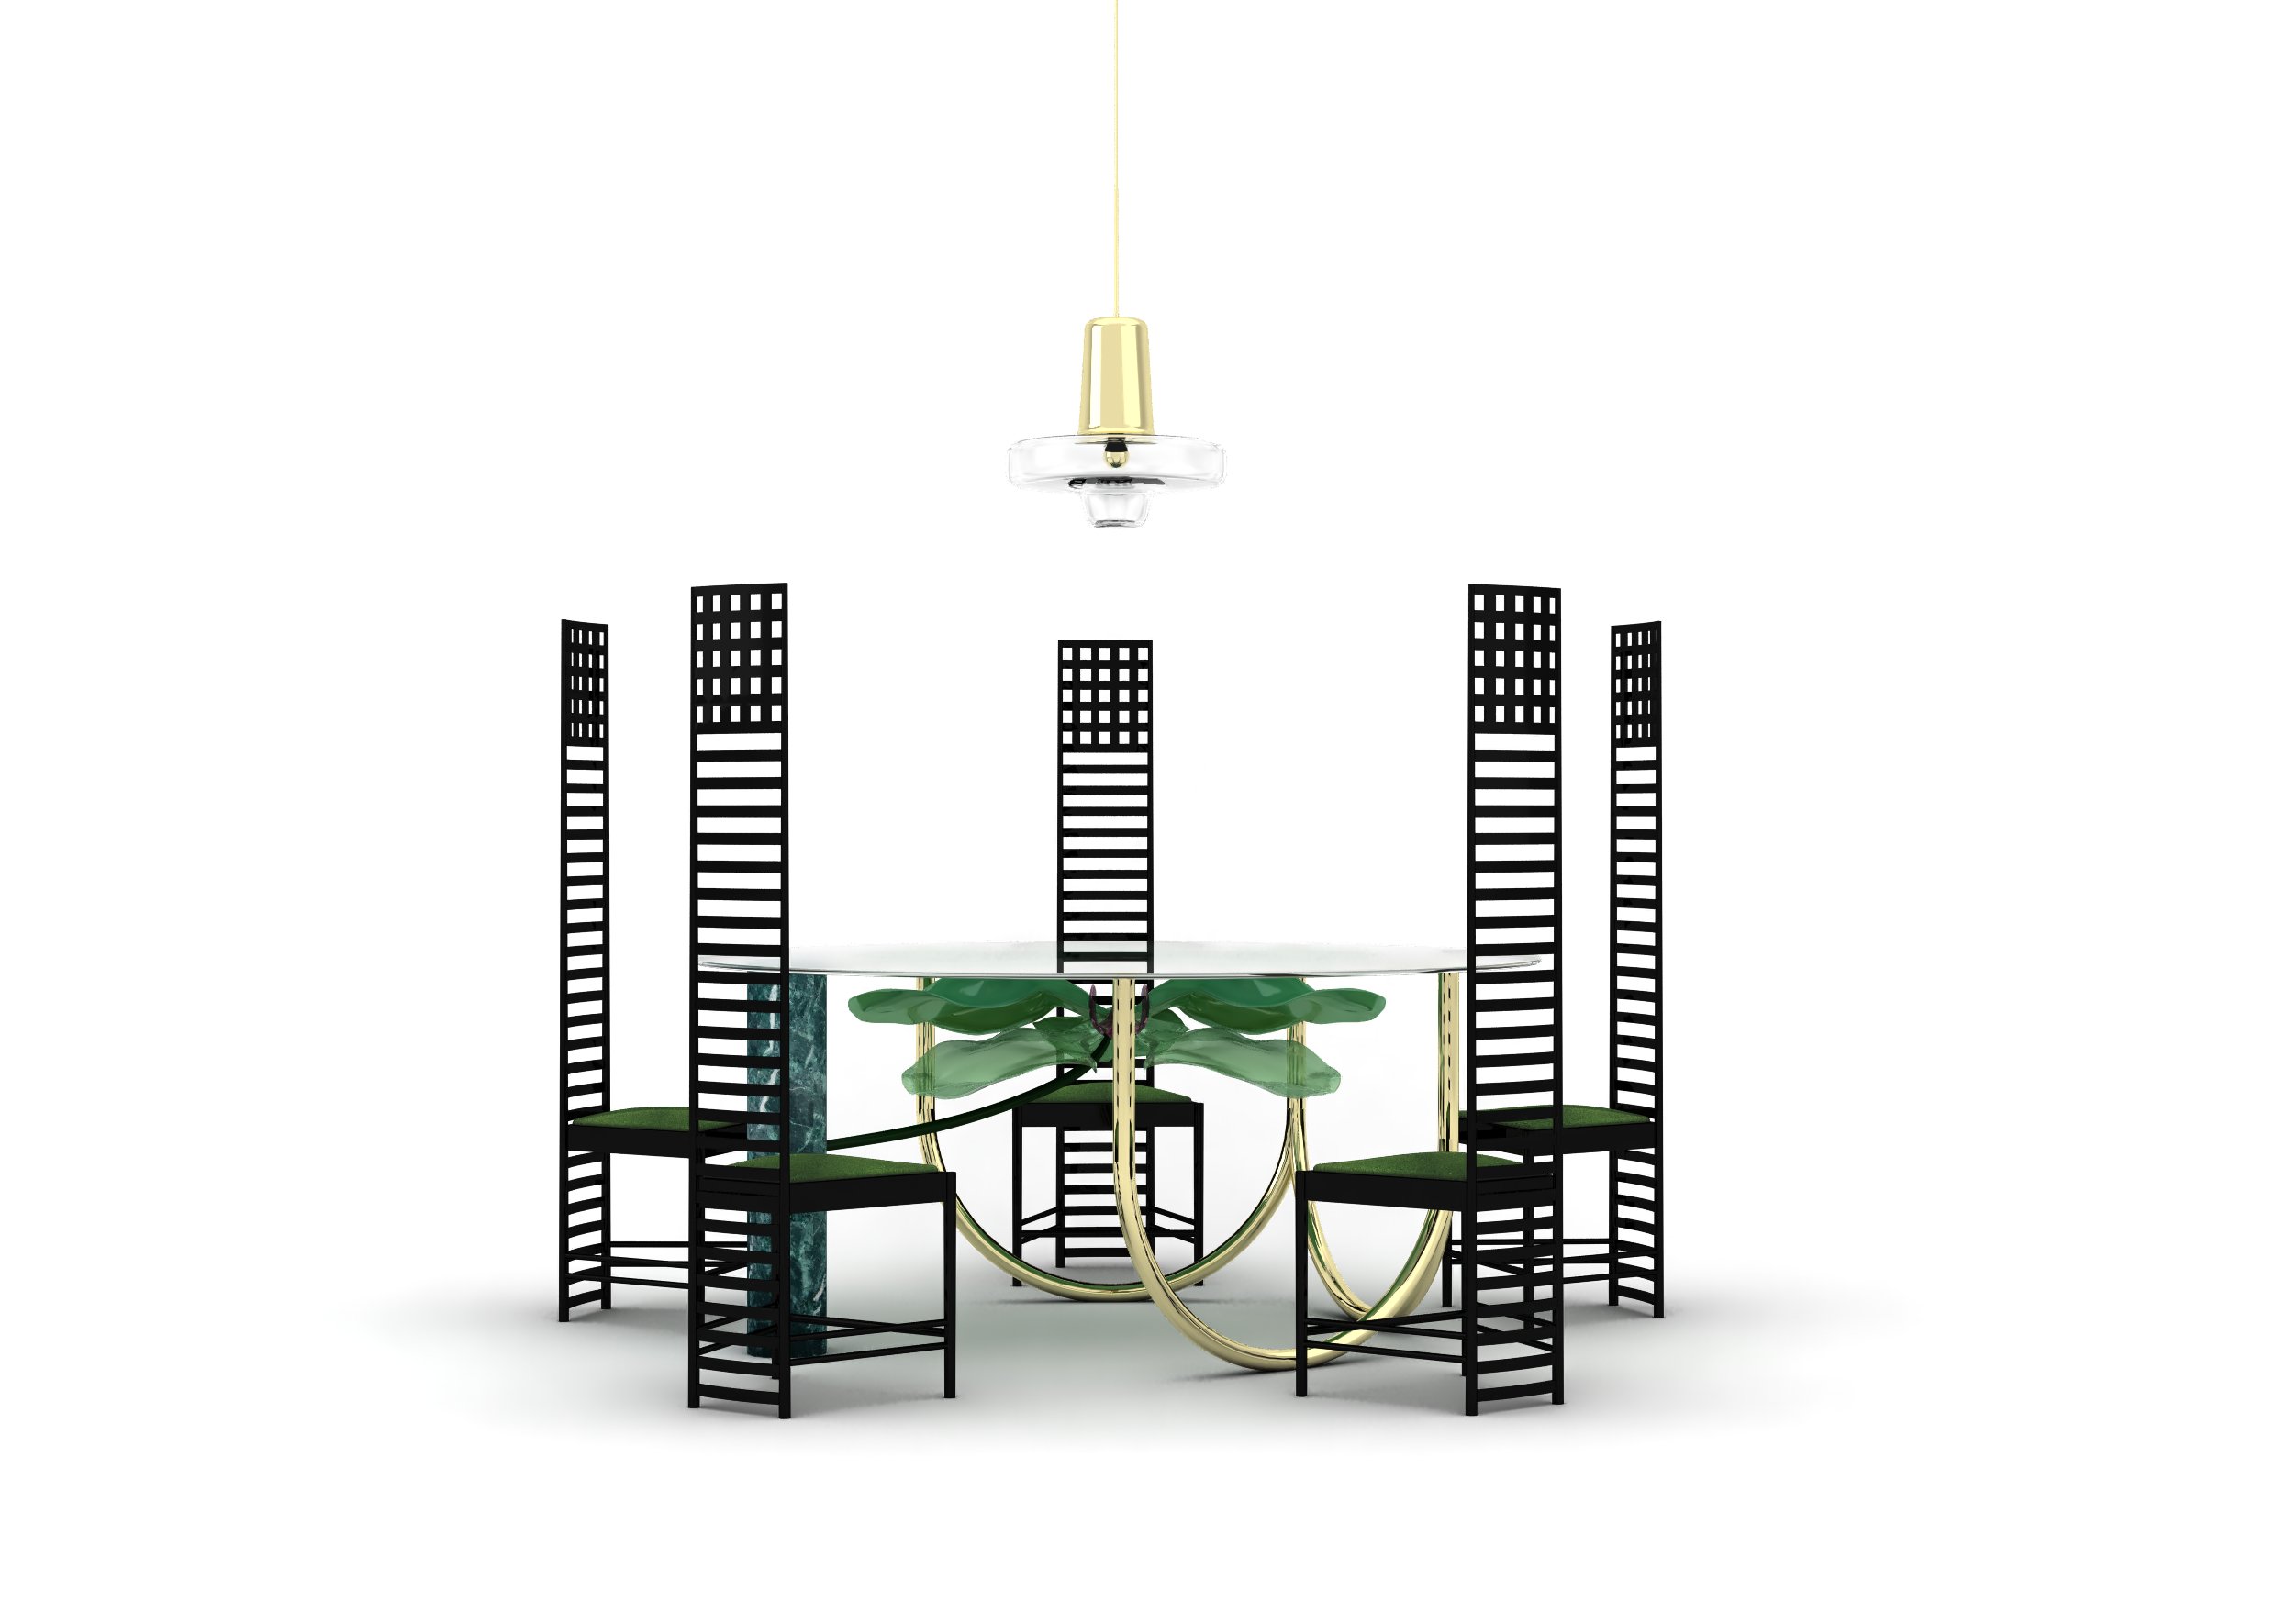 consultente arredo, furniture consultant, table designer, luxury table designer, custom table design, marble table design, contemporary table design, unique table design, contemporary round table